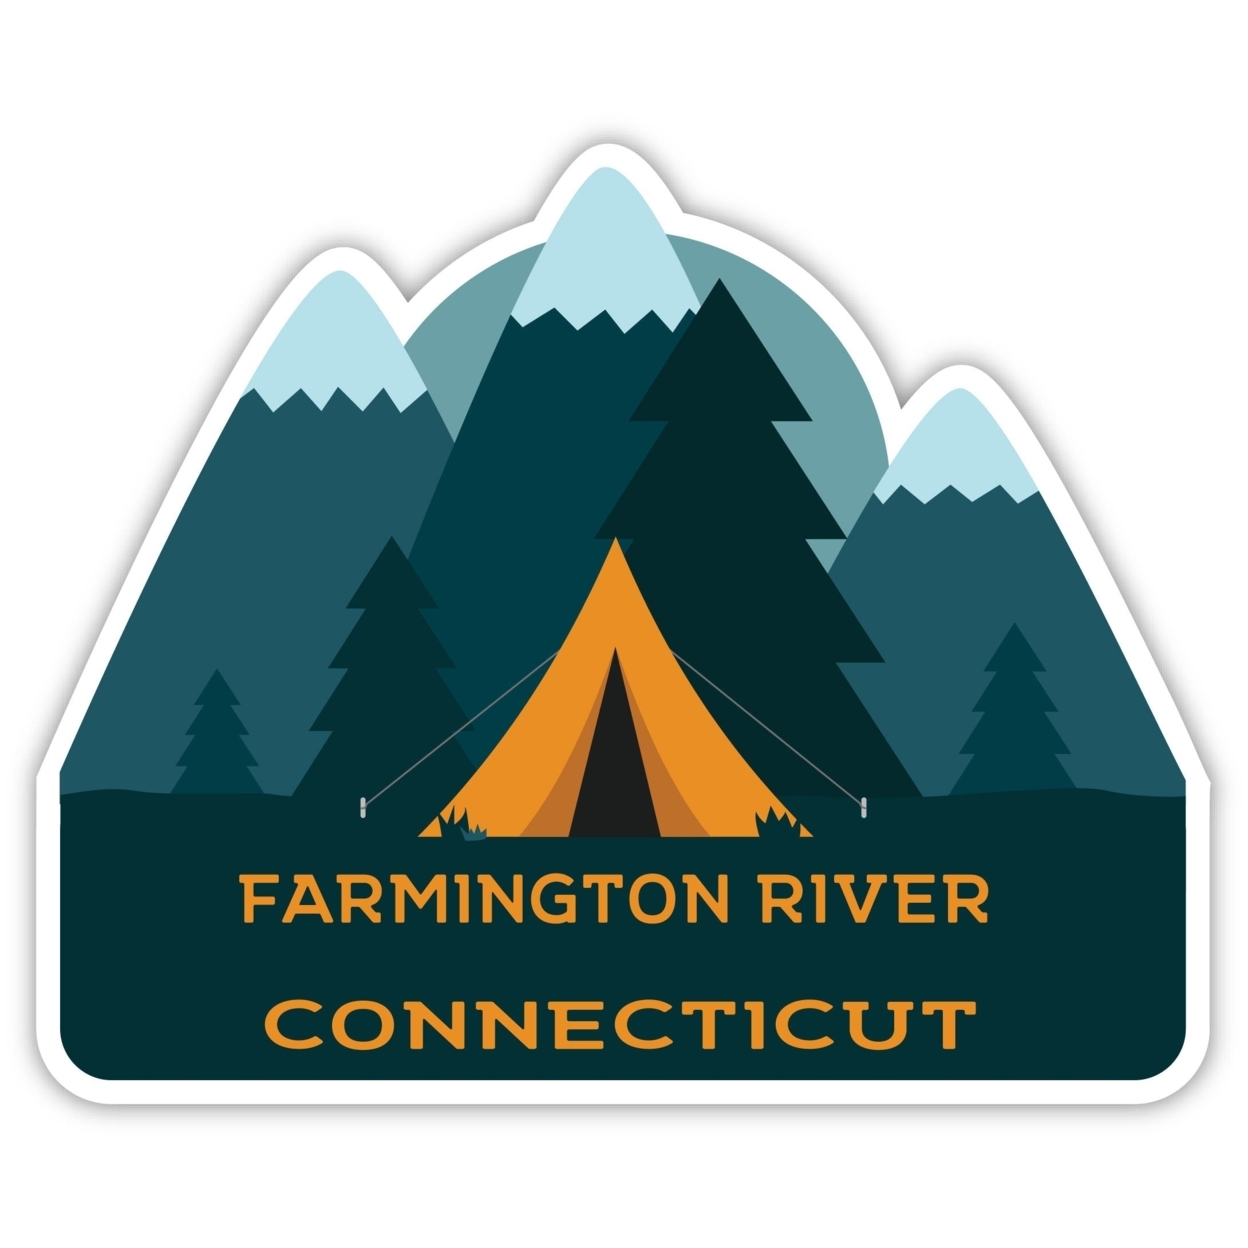 Farmington River Connecticut Souvenir Decorative Stickers (Choose Theme And Size) - 4-Pack, 10-Inch, Tent